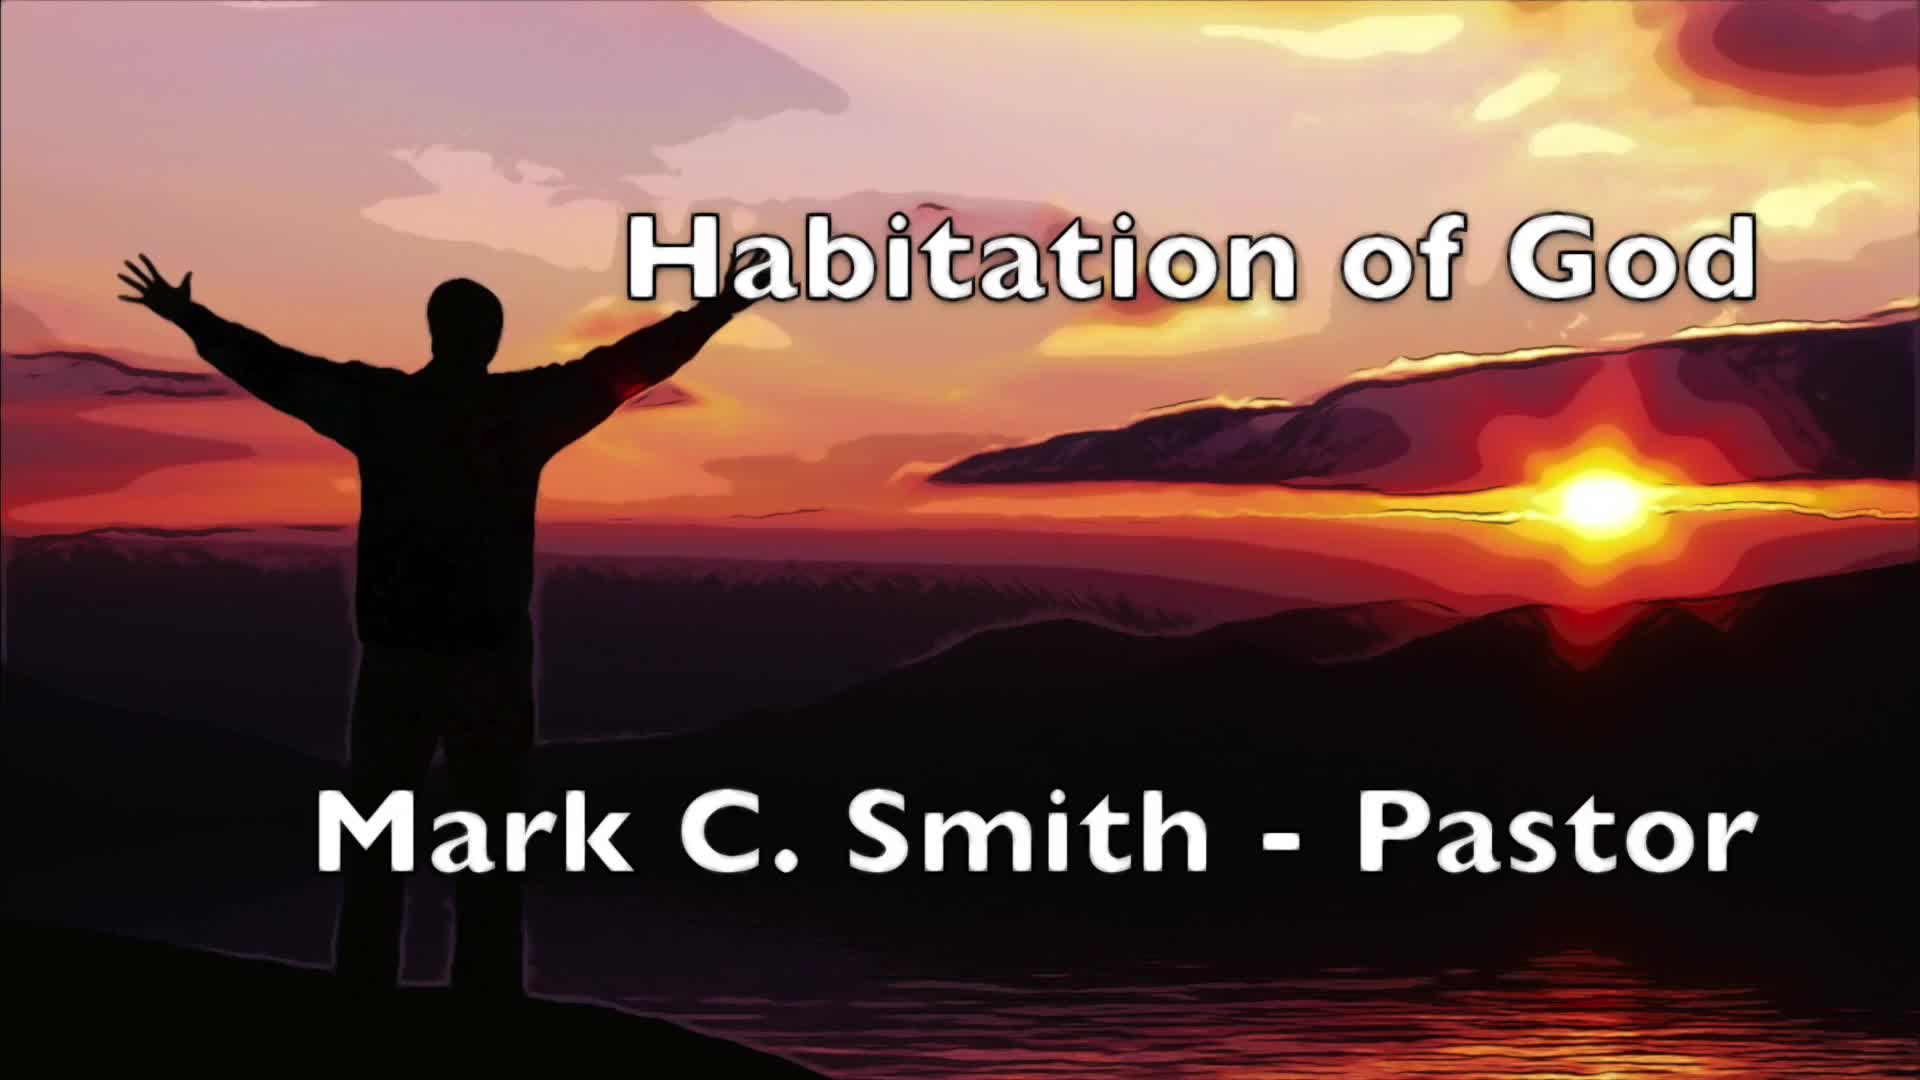 Habitation of God